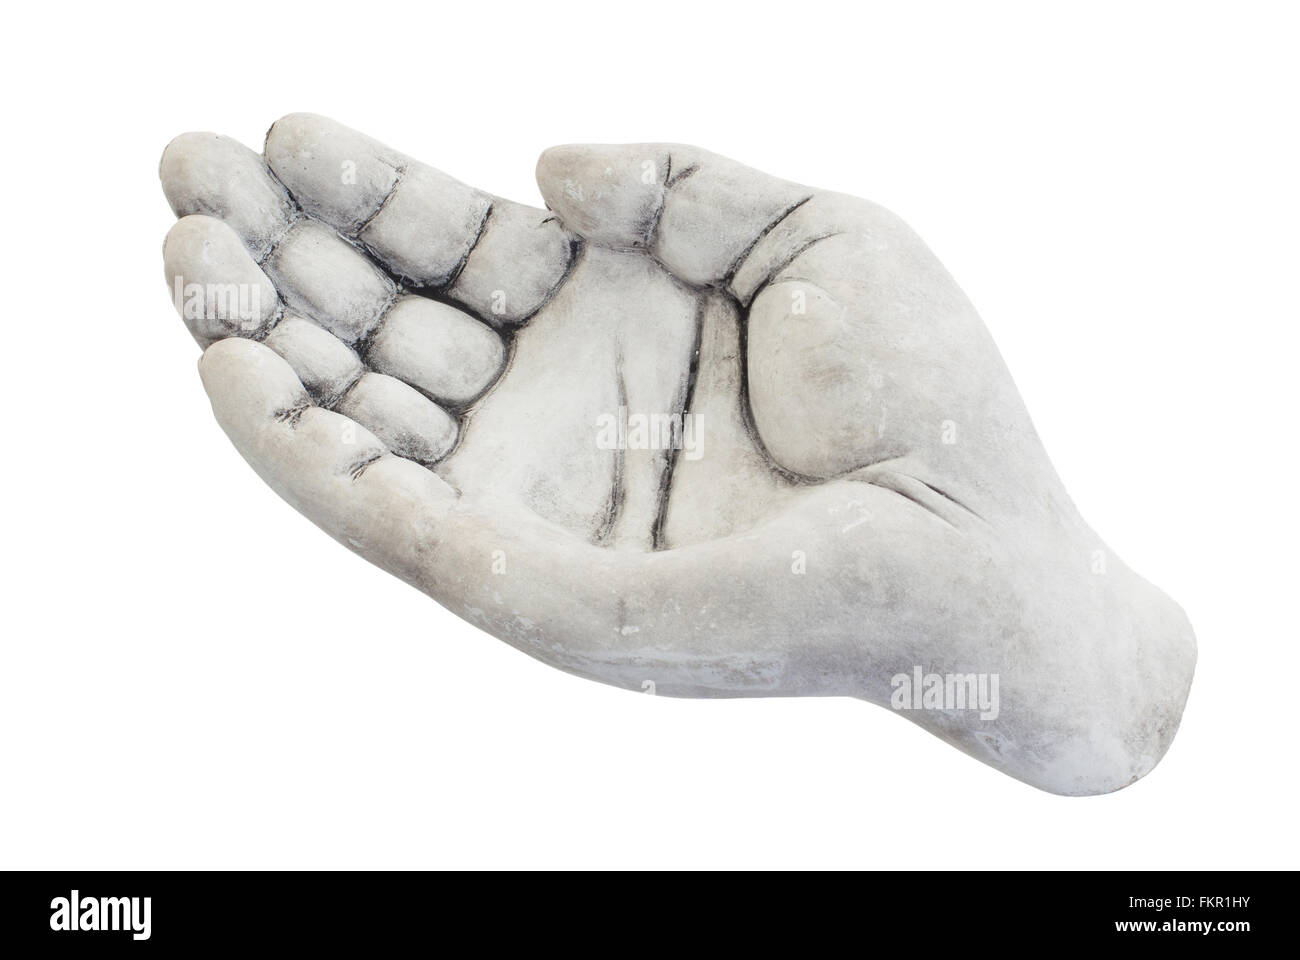 Ciotola di pietra nella forma di una mano, isolato su bianco Foto Stock